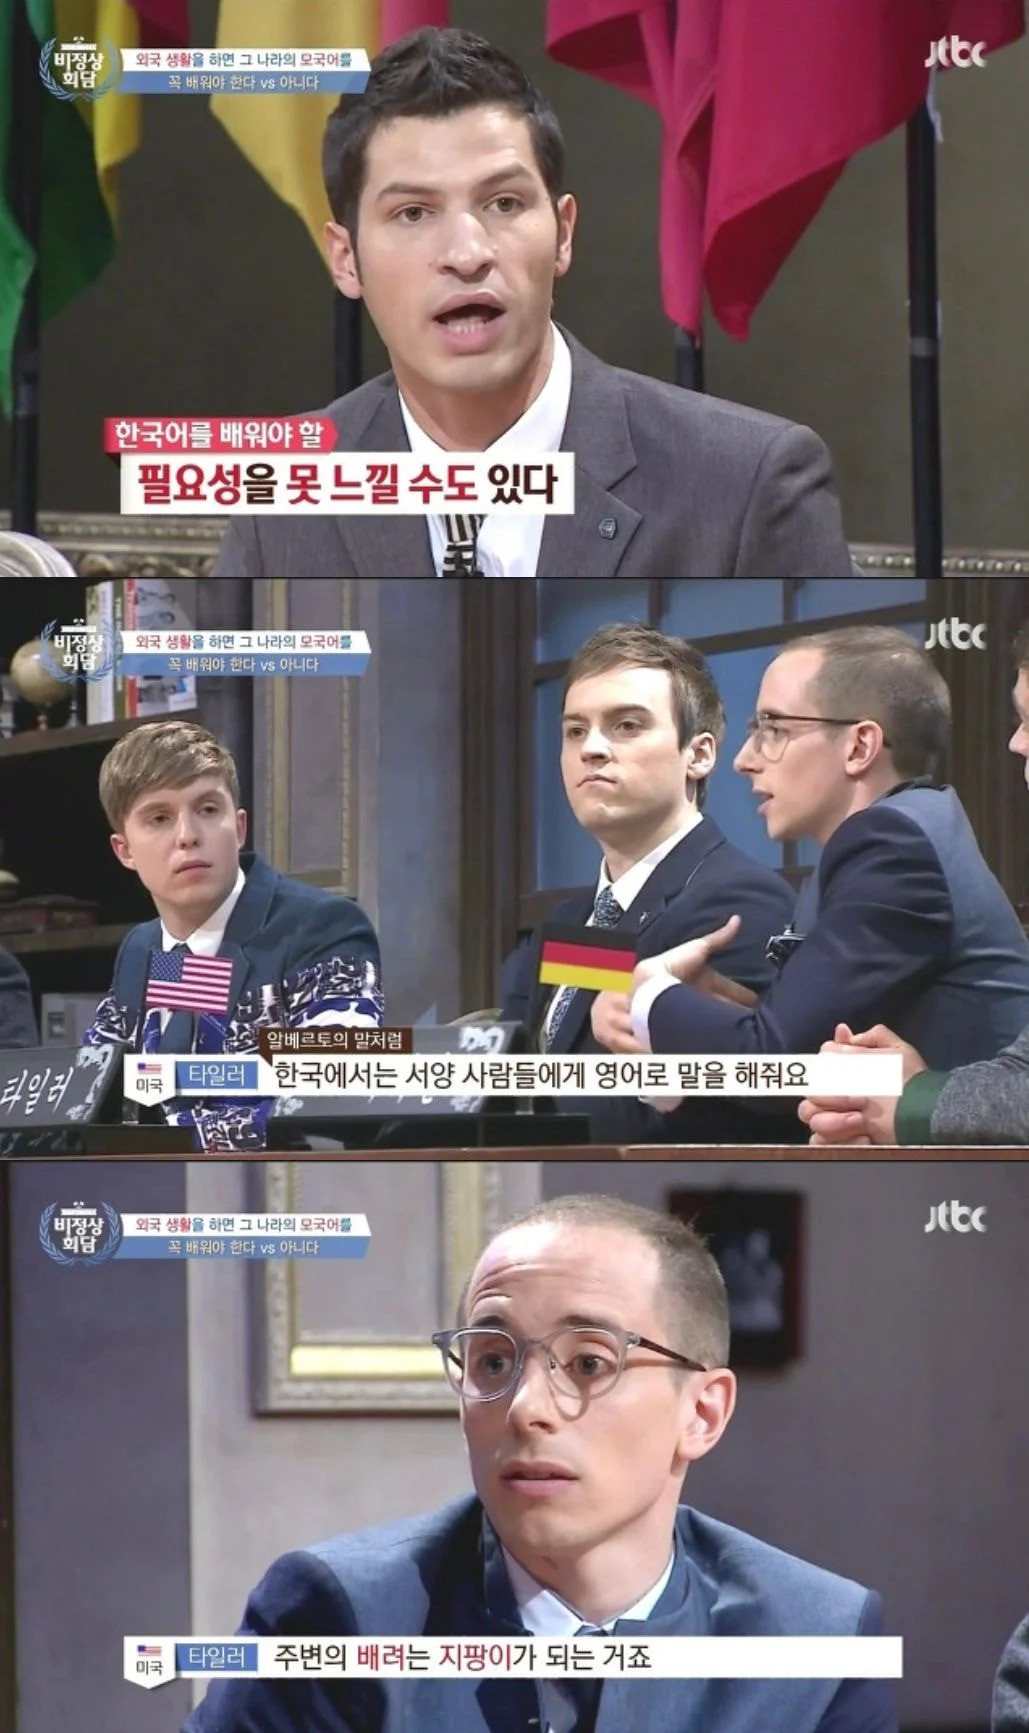 알베르토가 느낀 한국인과 중국인의 차이.jpg